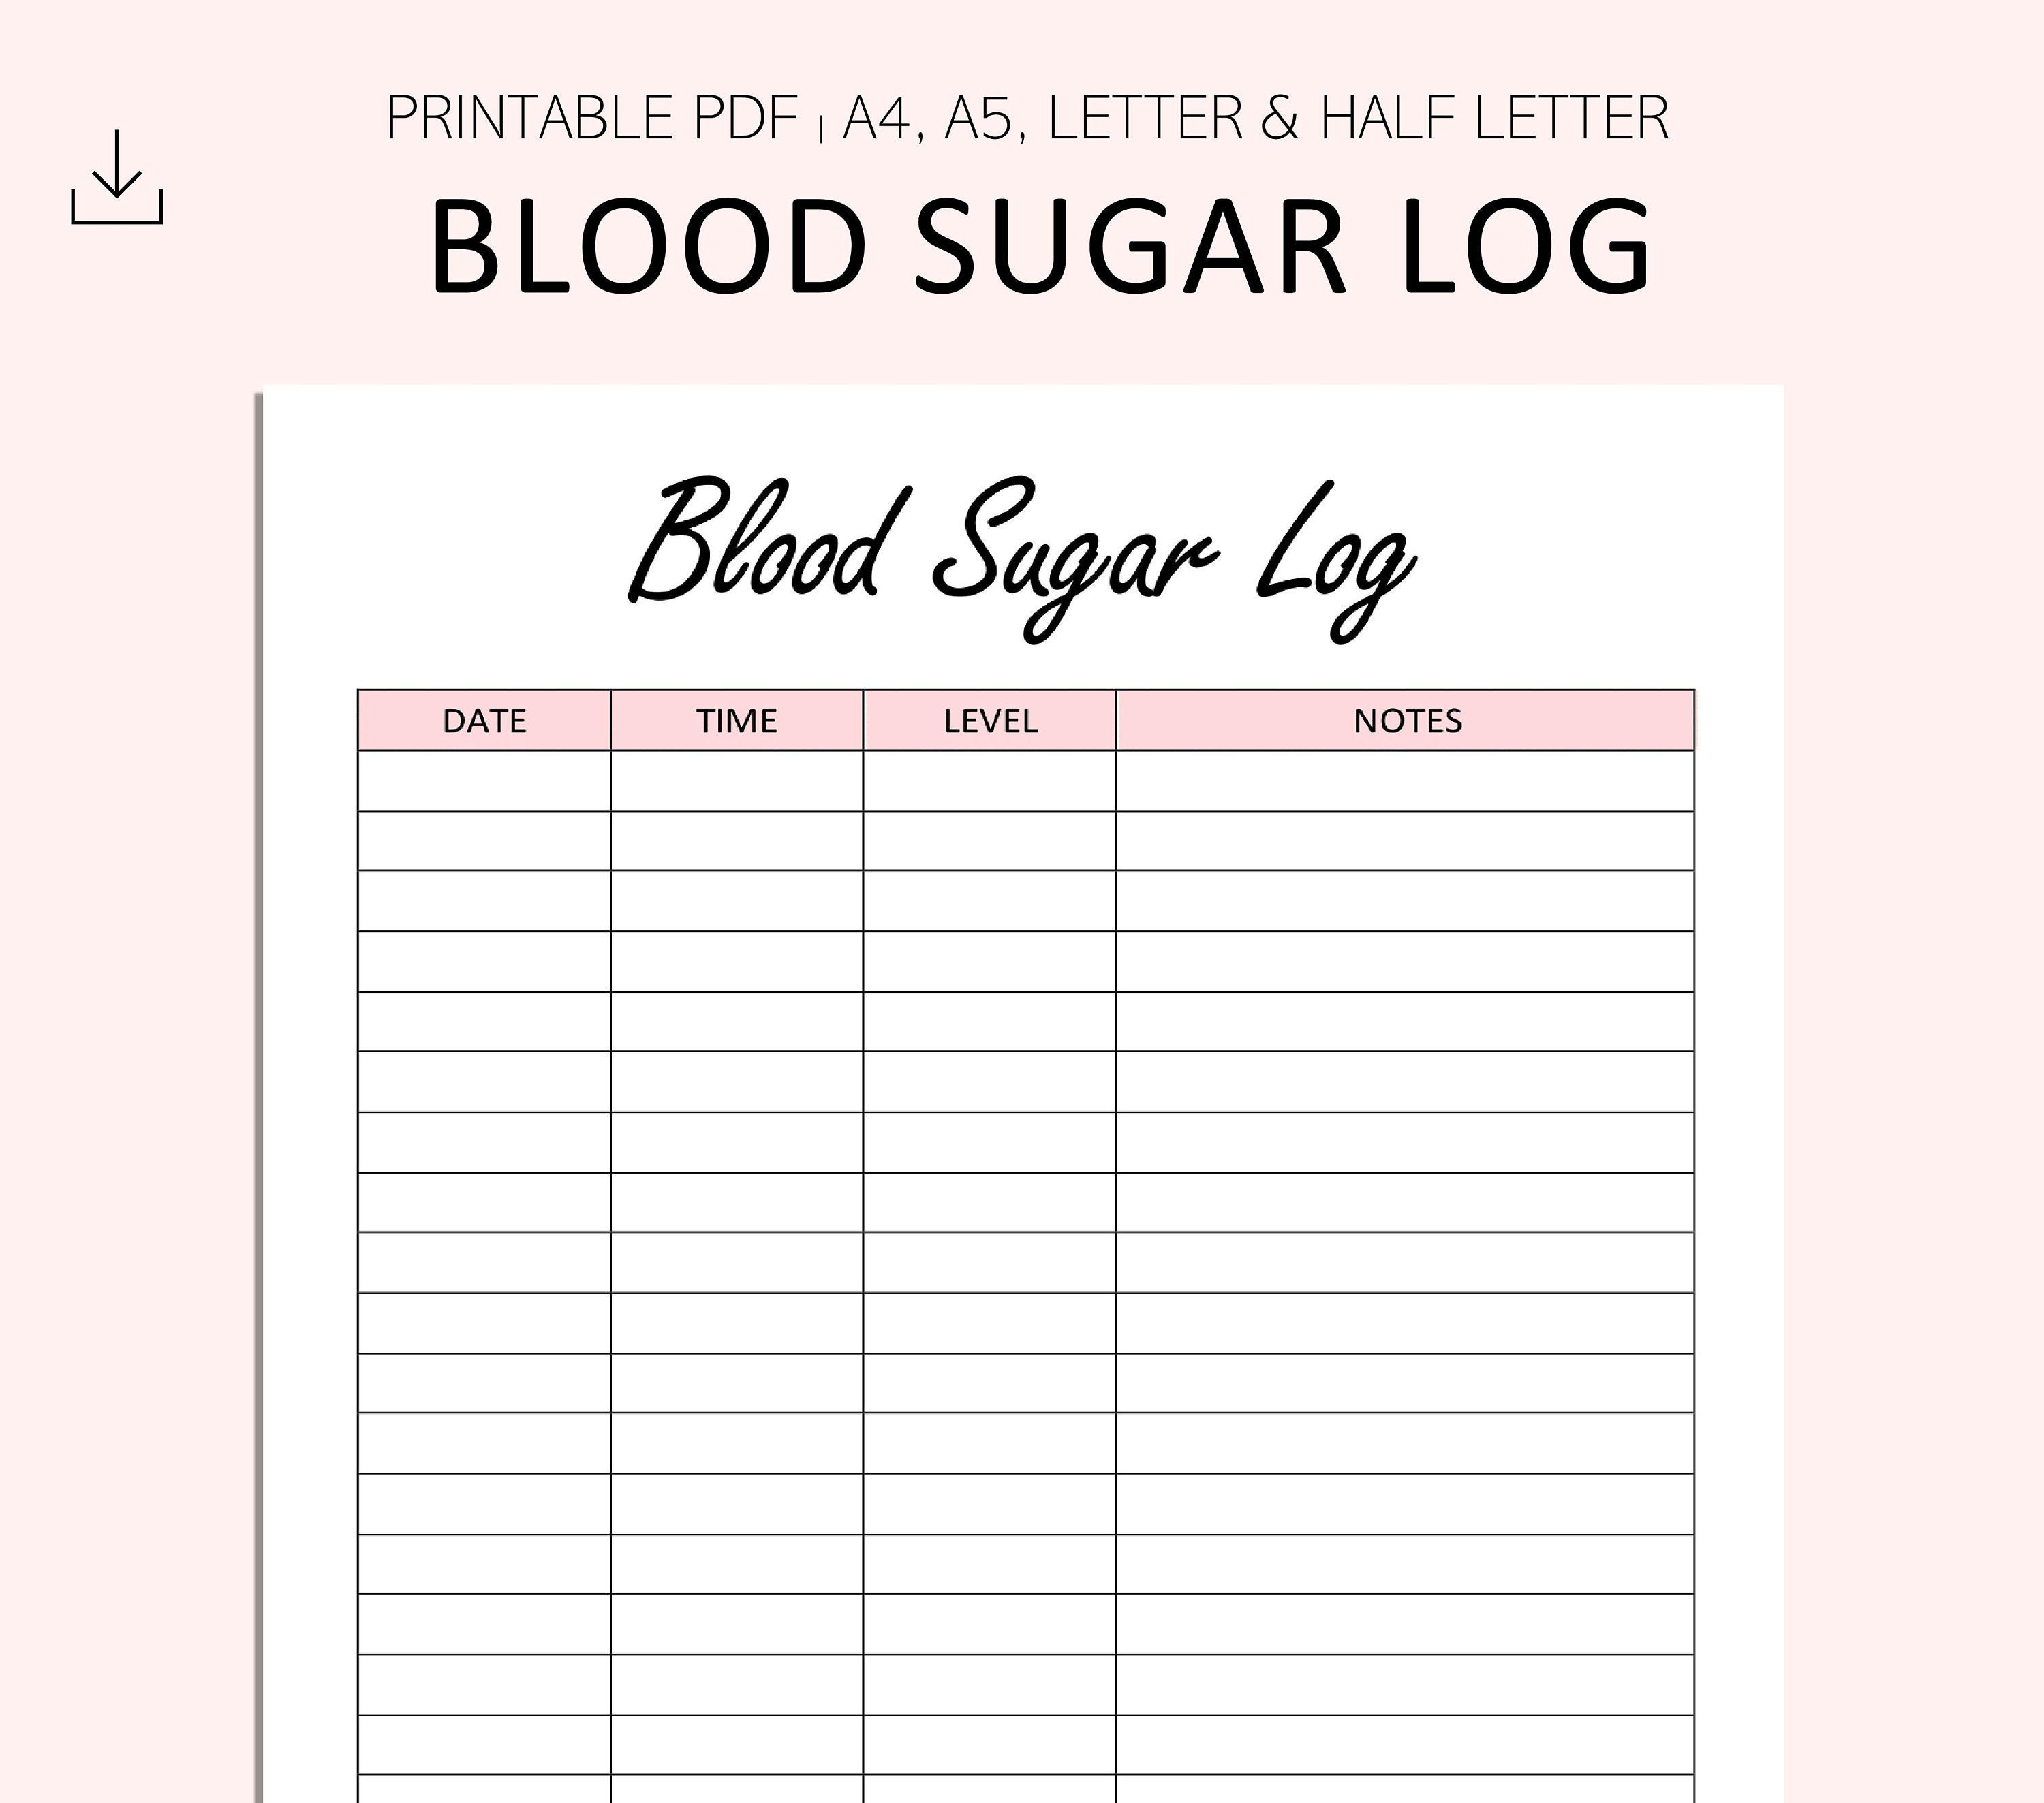 blood-sugar-log-printable-free